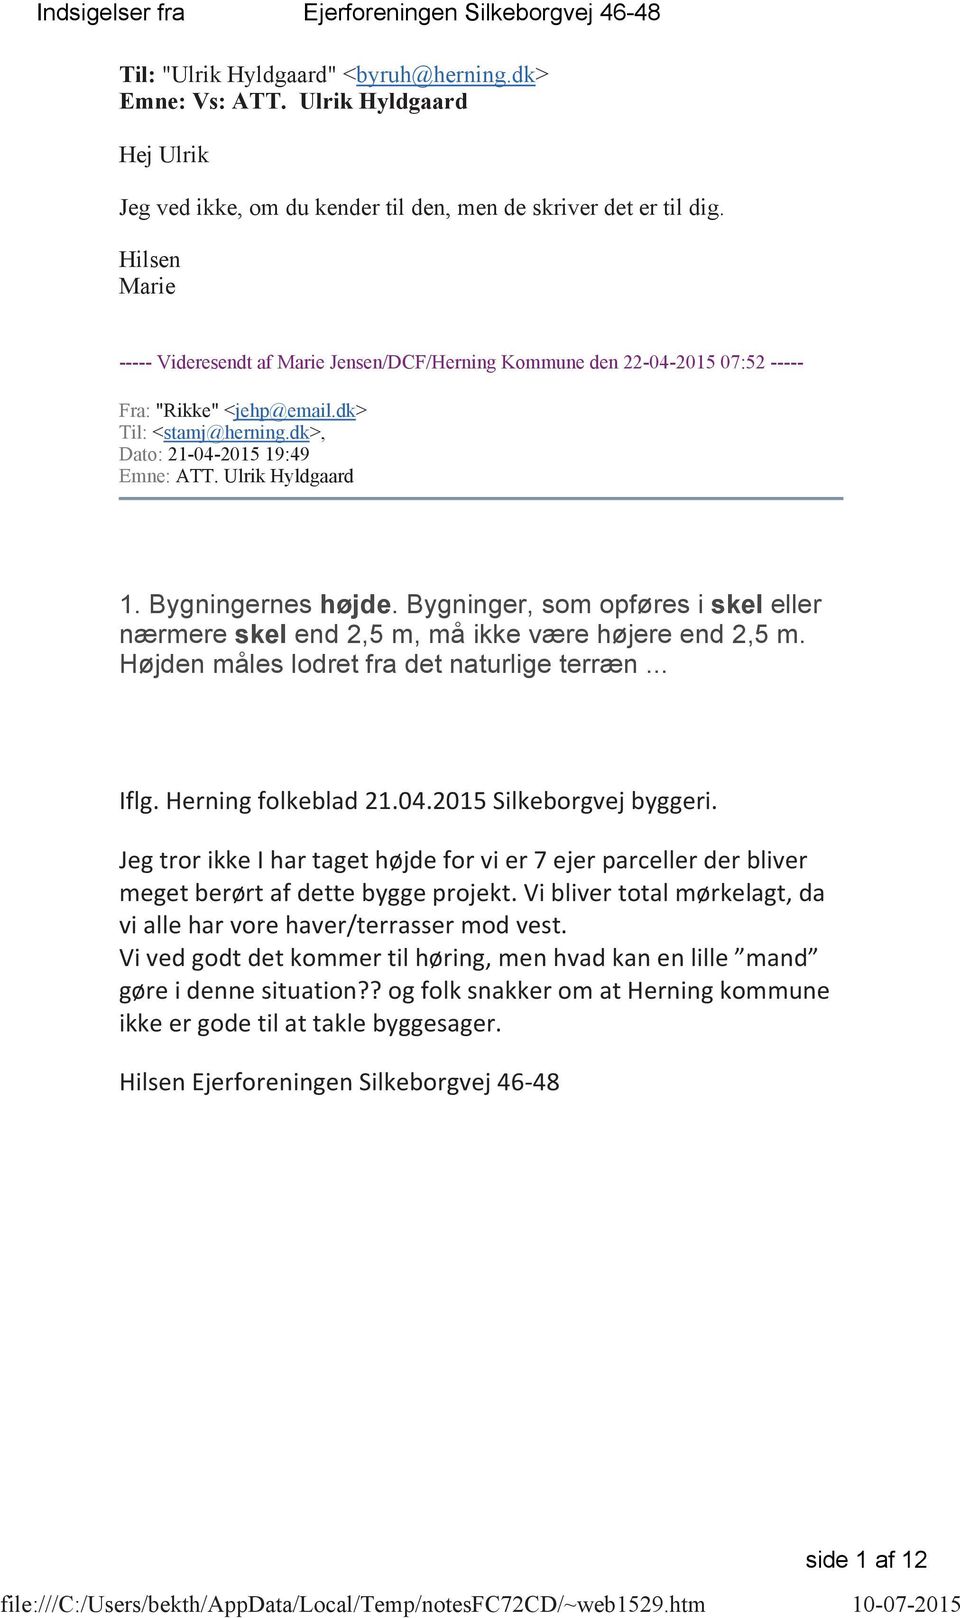 Hilsen Marie ----- Videresendt af Marie Jensen/DCF/Herning Kommune den 22-04-2015 07:52 ----- Fra: "Rikke" <jehp@email.dk> Til: <stamj@herning.dk>, Dato: 21-04-2015 19:49 Emne: ATT. Ulrik Hyldgaard 1.